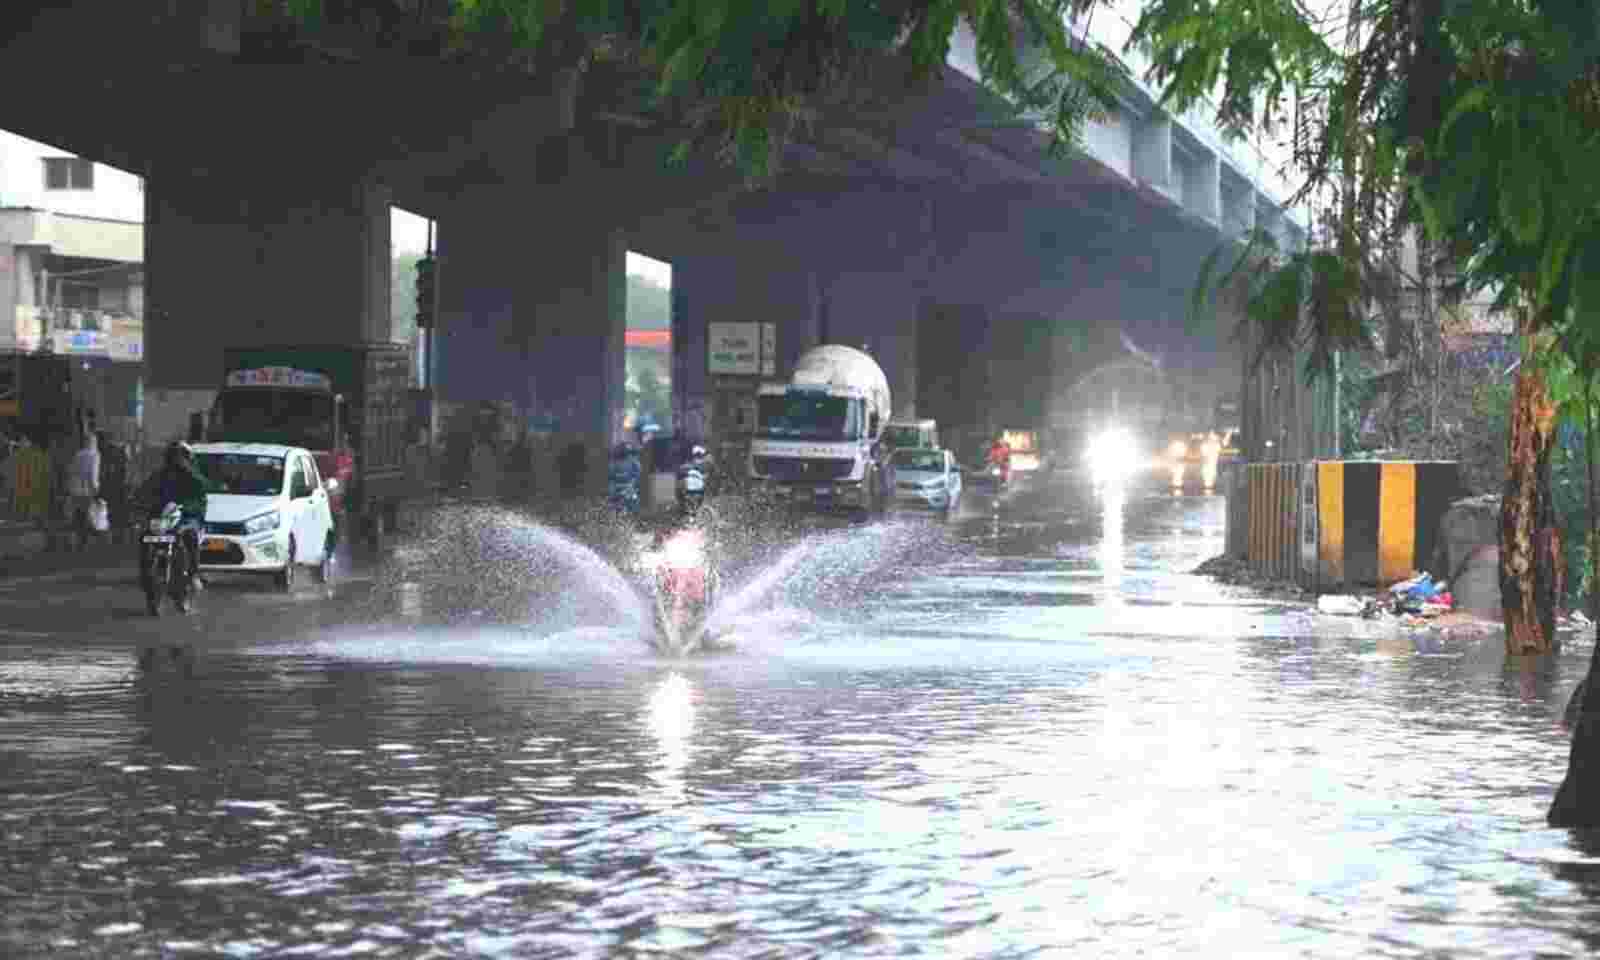 Telangana: Heavy rain lashes Hyderabad City on Thursday night